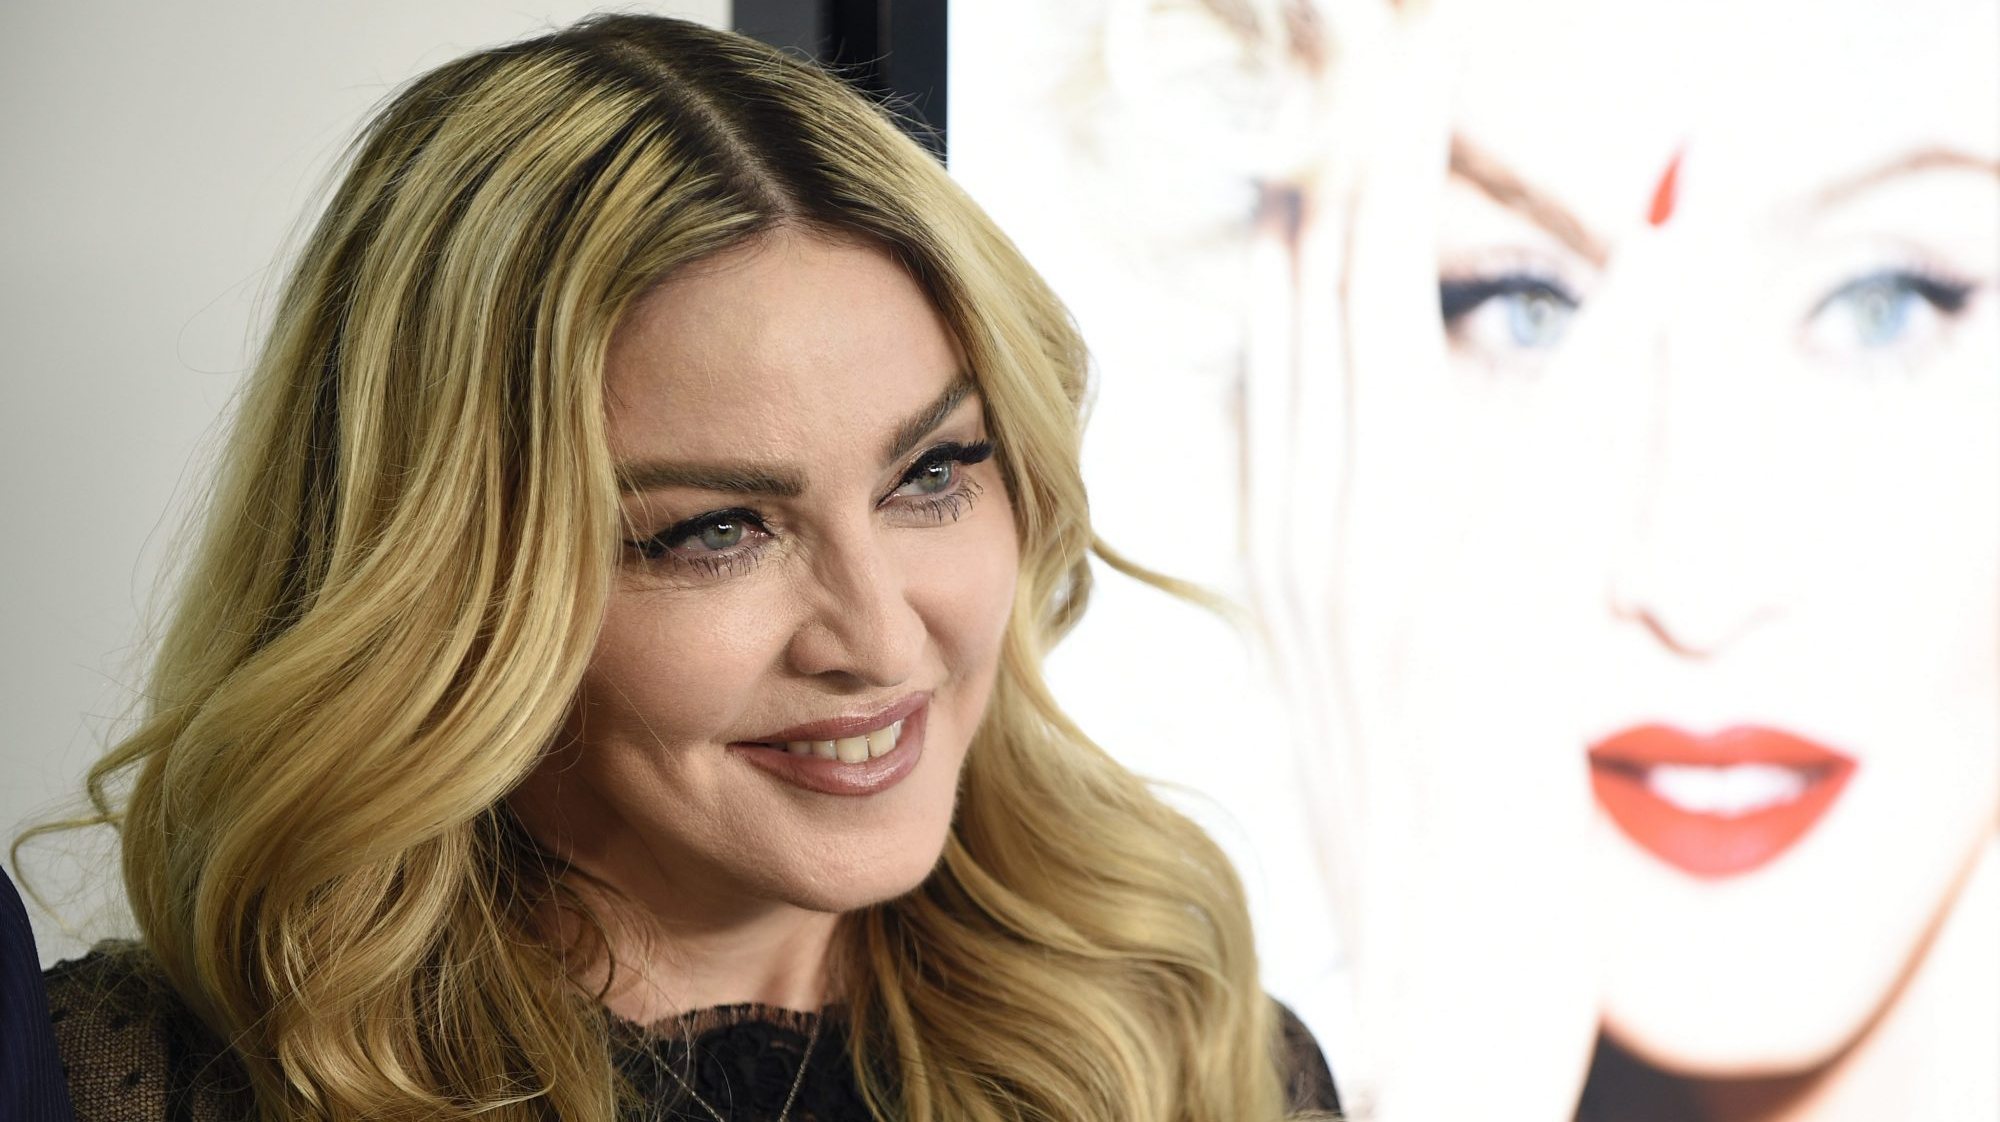 O comentário de Madonna surge numa altura em que vários utilizadores do Instagram se mostraram preocupados com a nova política do Instagram, em vigor desde domingo, que alegadamente permite que a plataforma exclua conteúdo sexualmente sugestivo